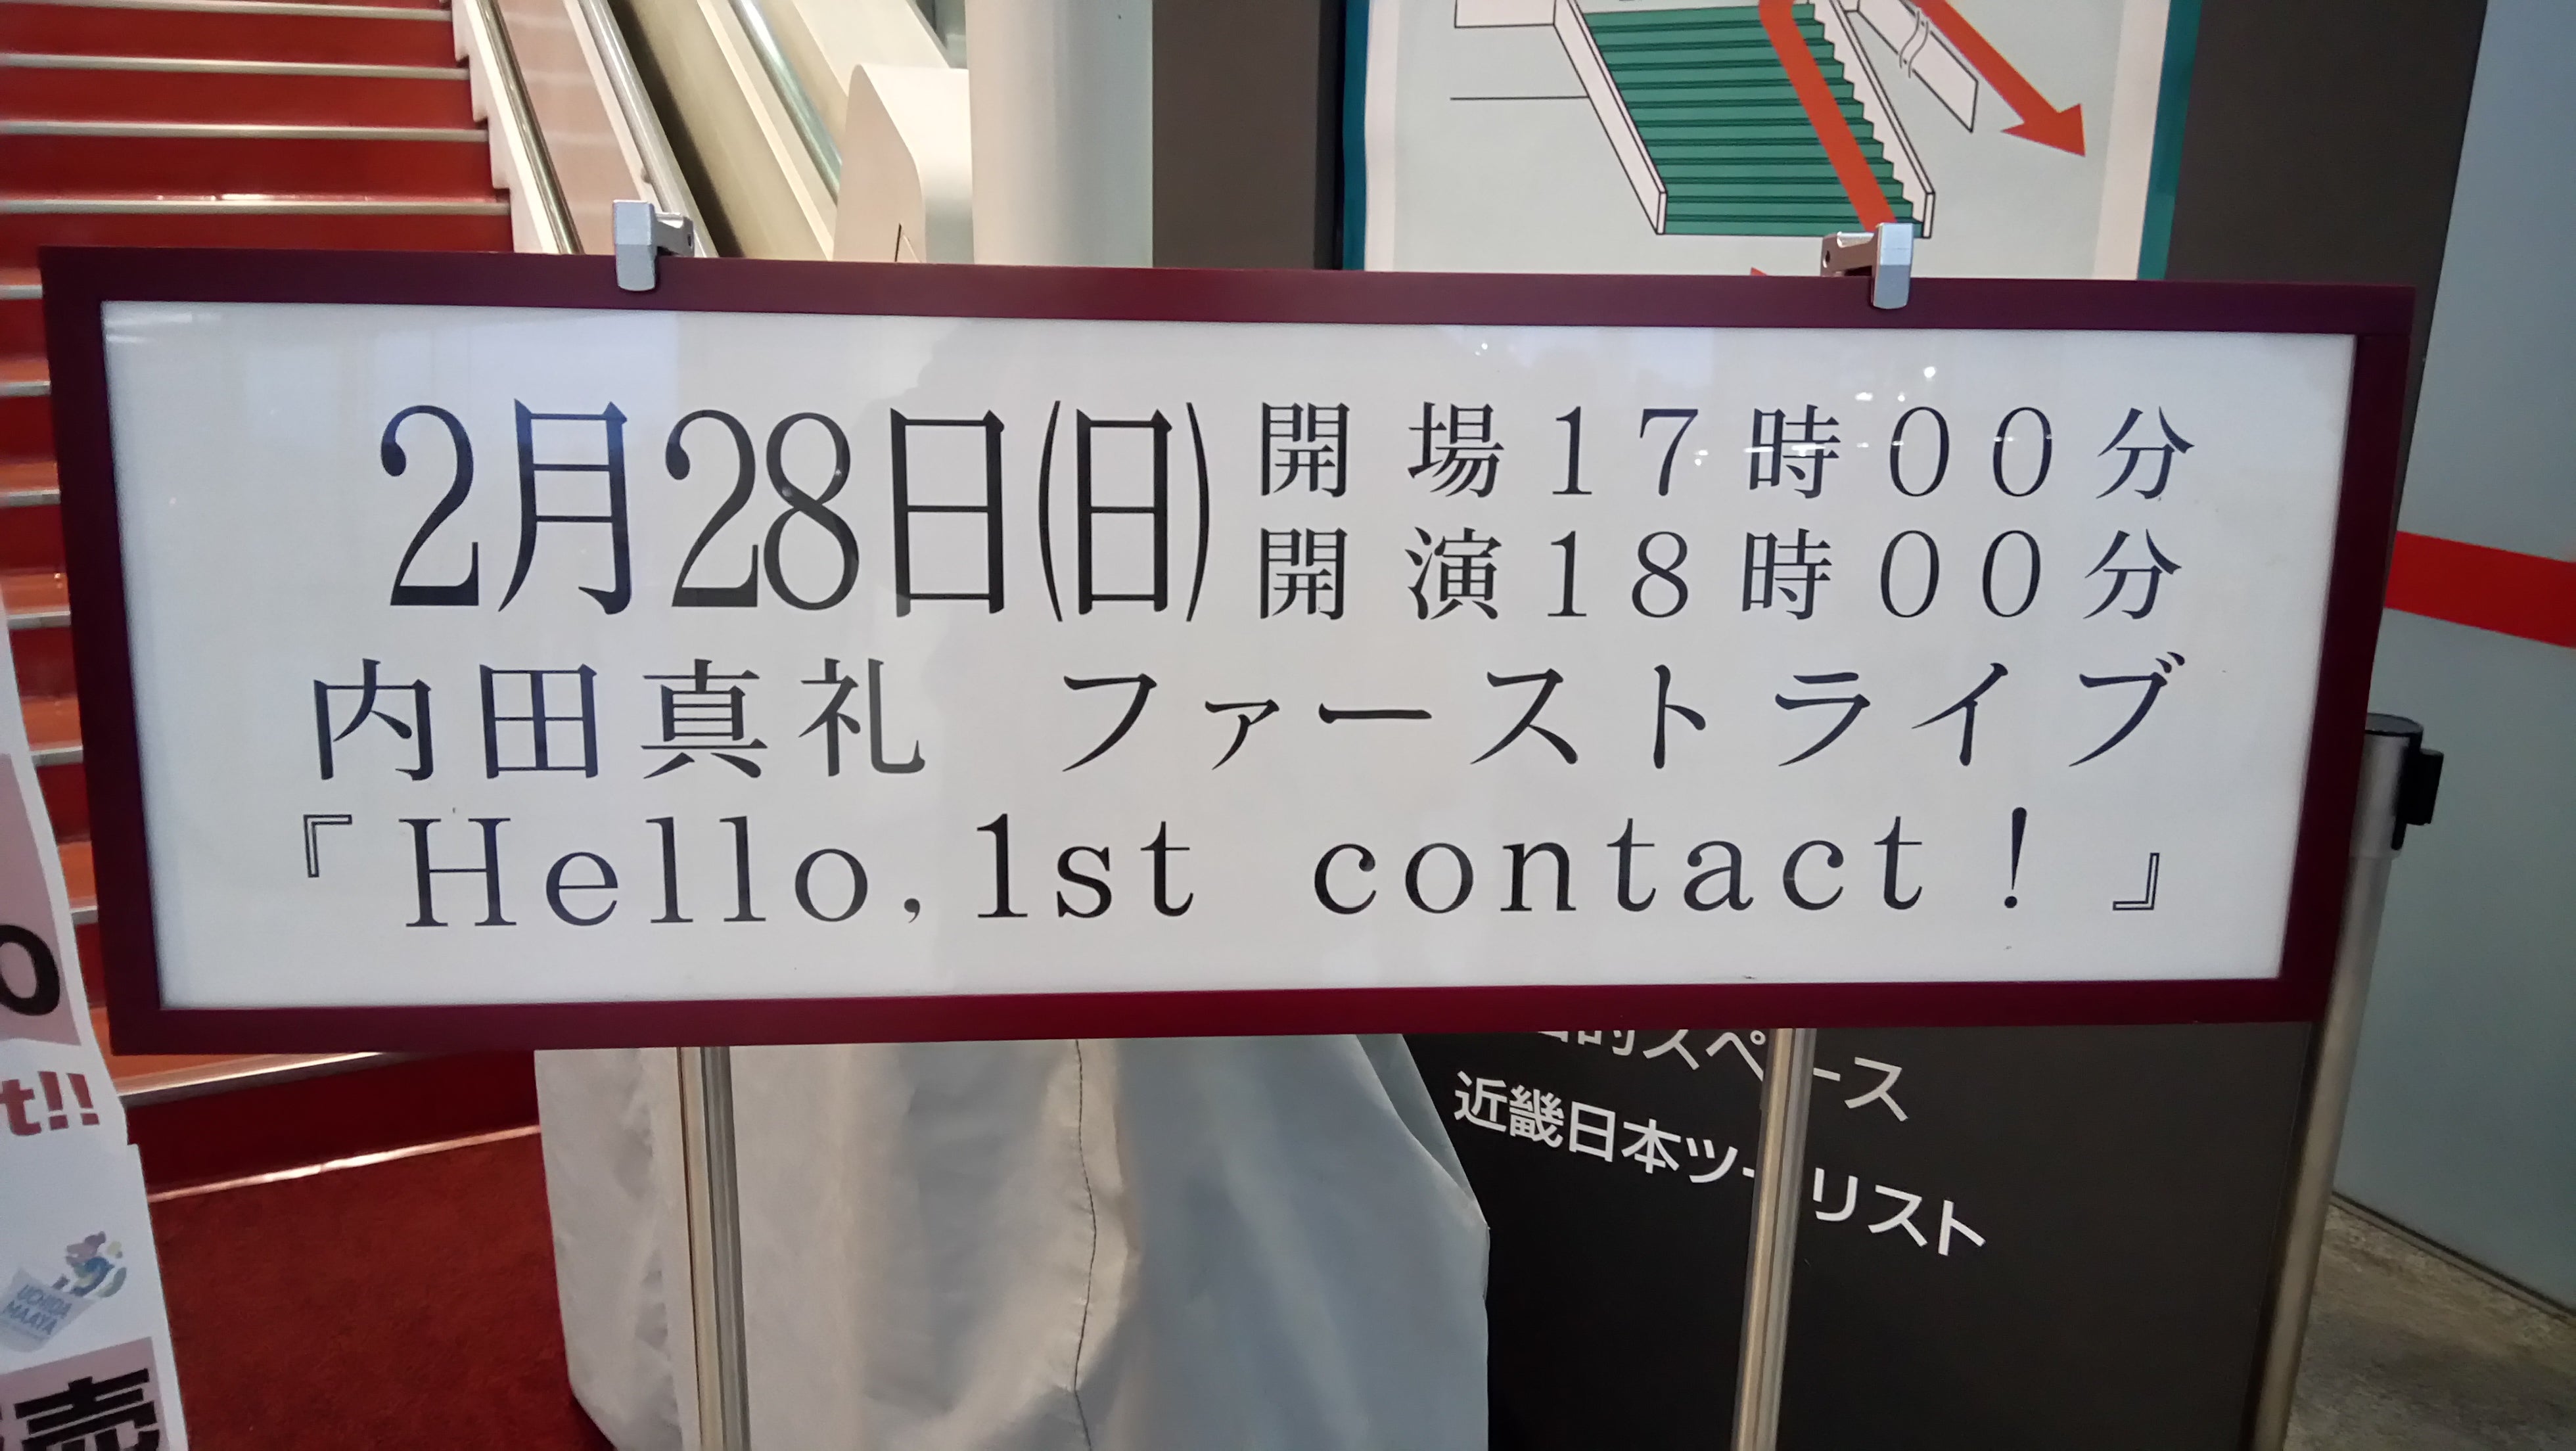 内田真礼 1st Live Hello 1st Contact Dendro00のブログ